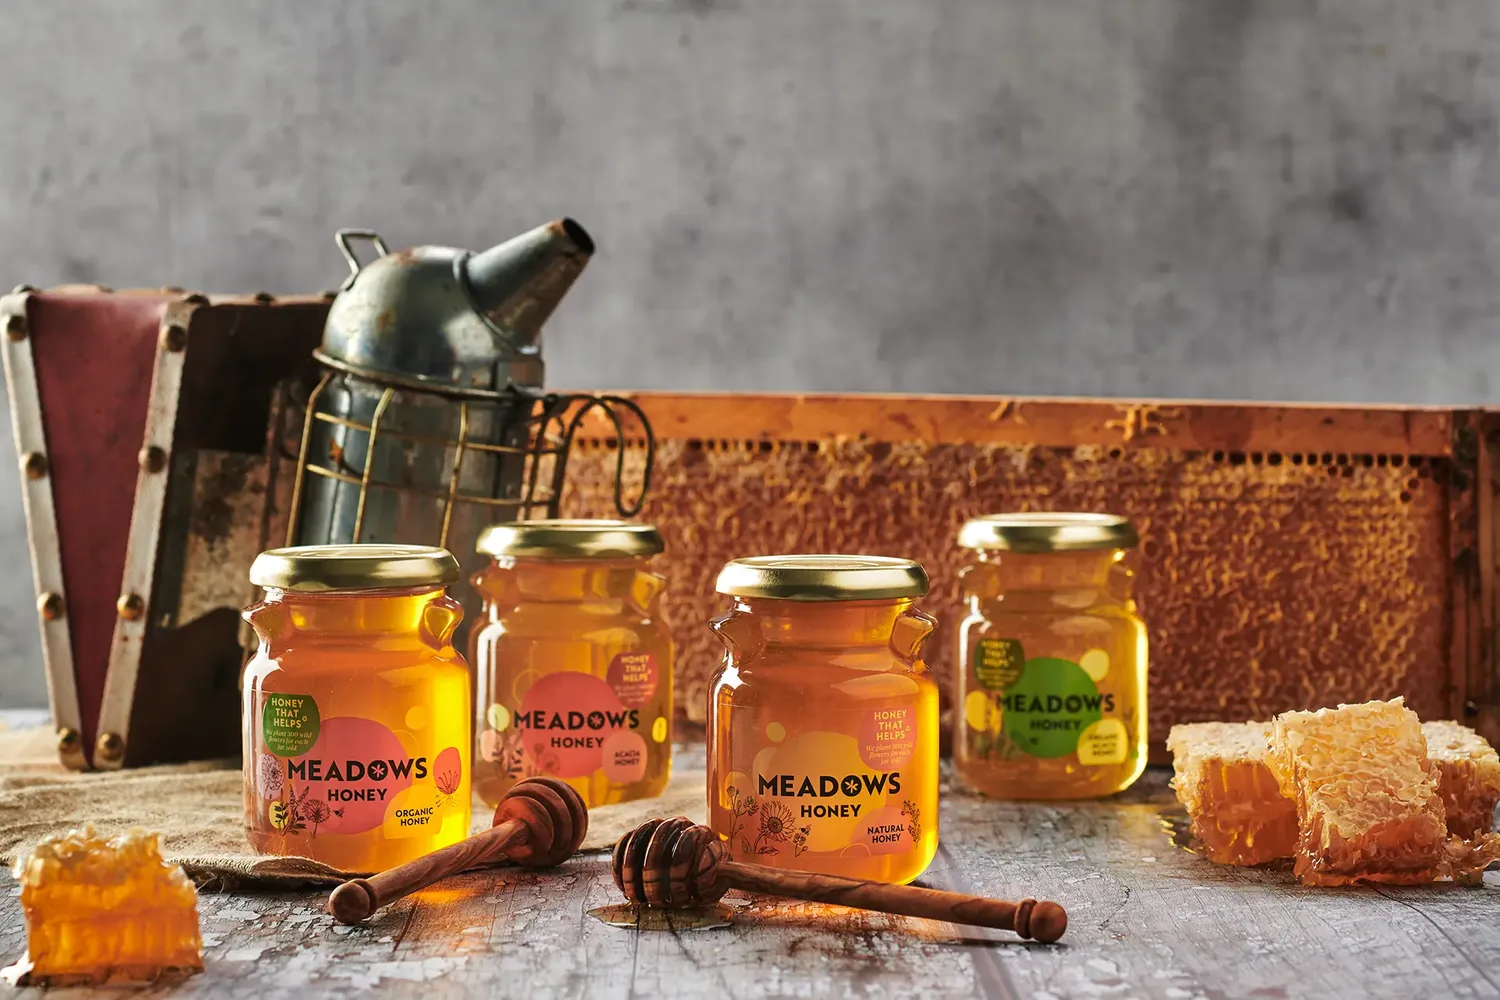 Meadows Honey